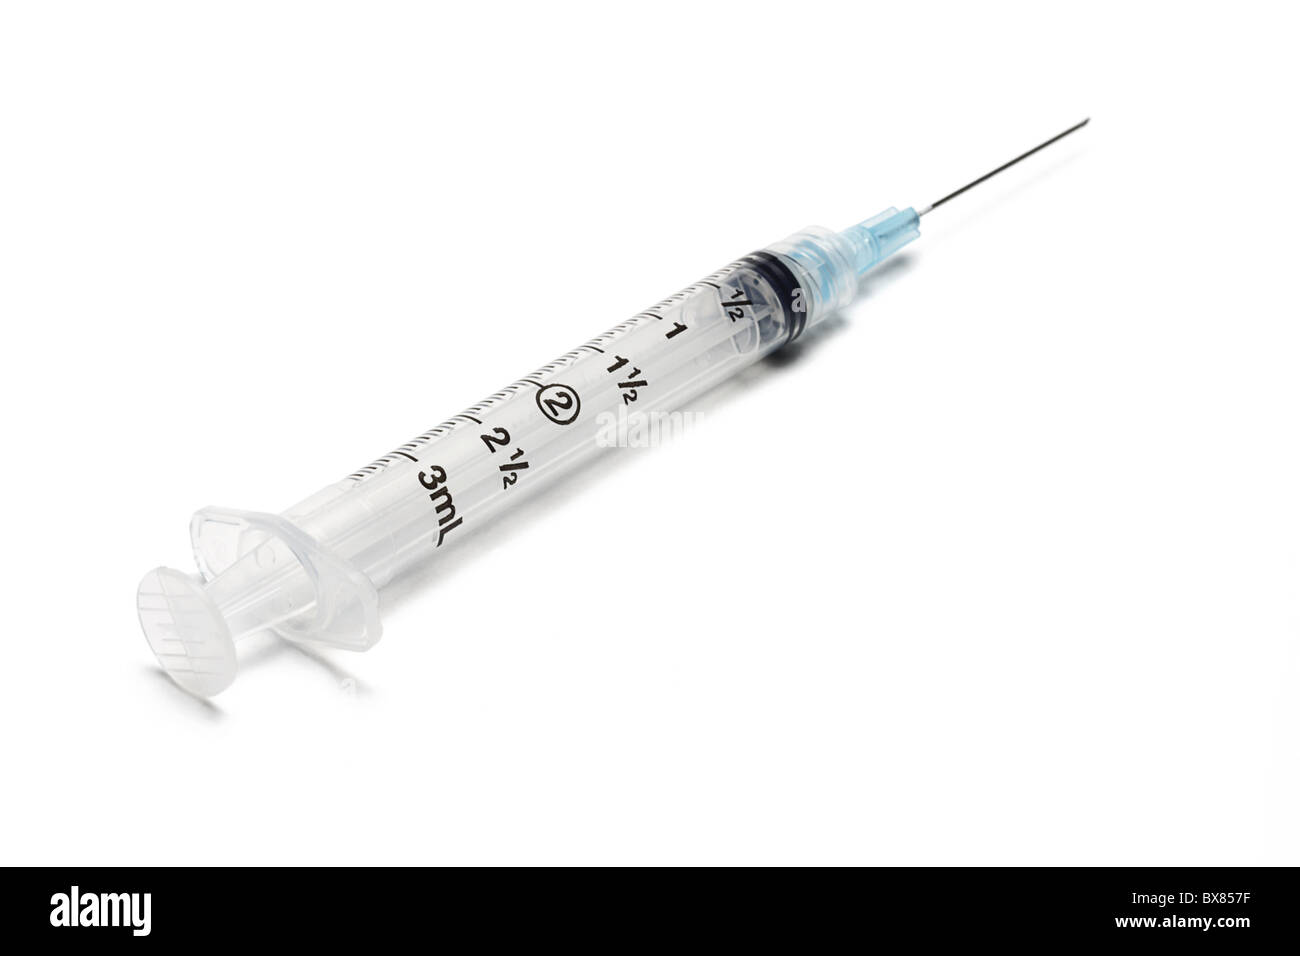 Used medical syringe and needle on white background Stock Photo